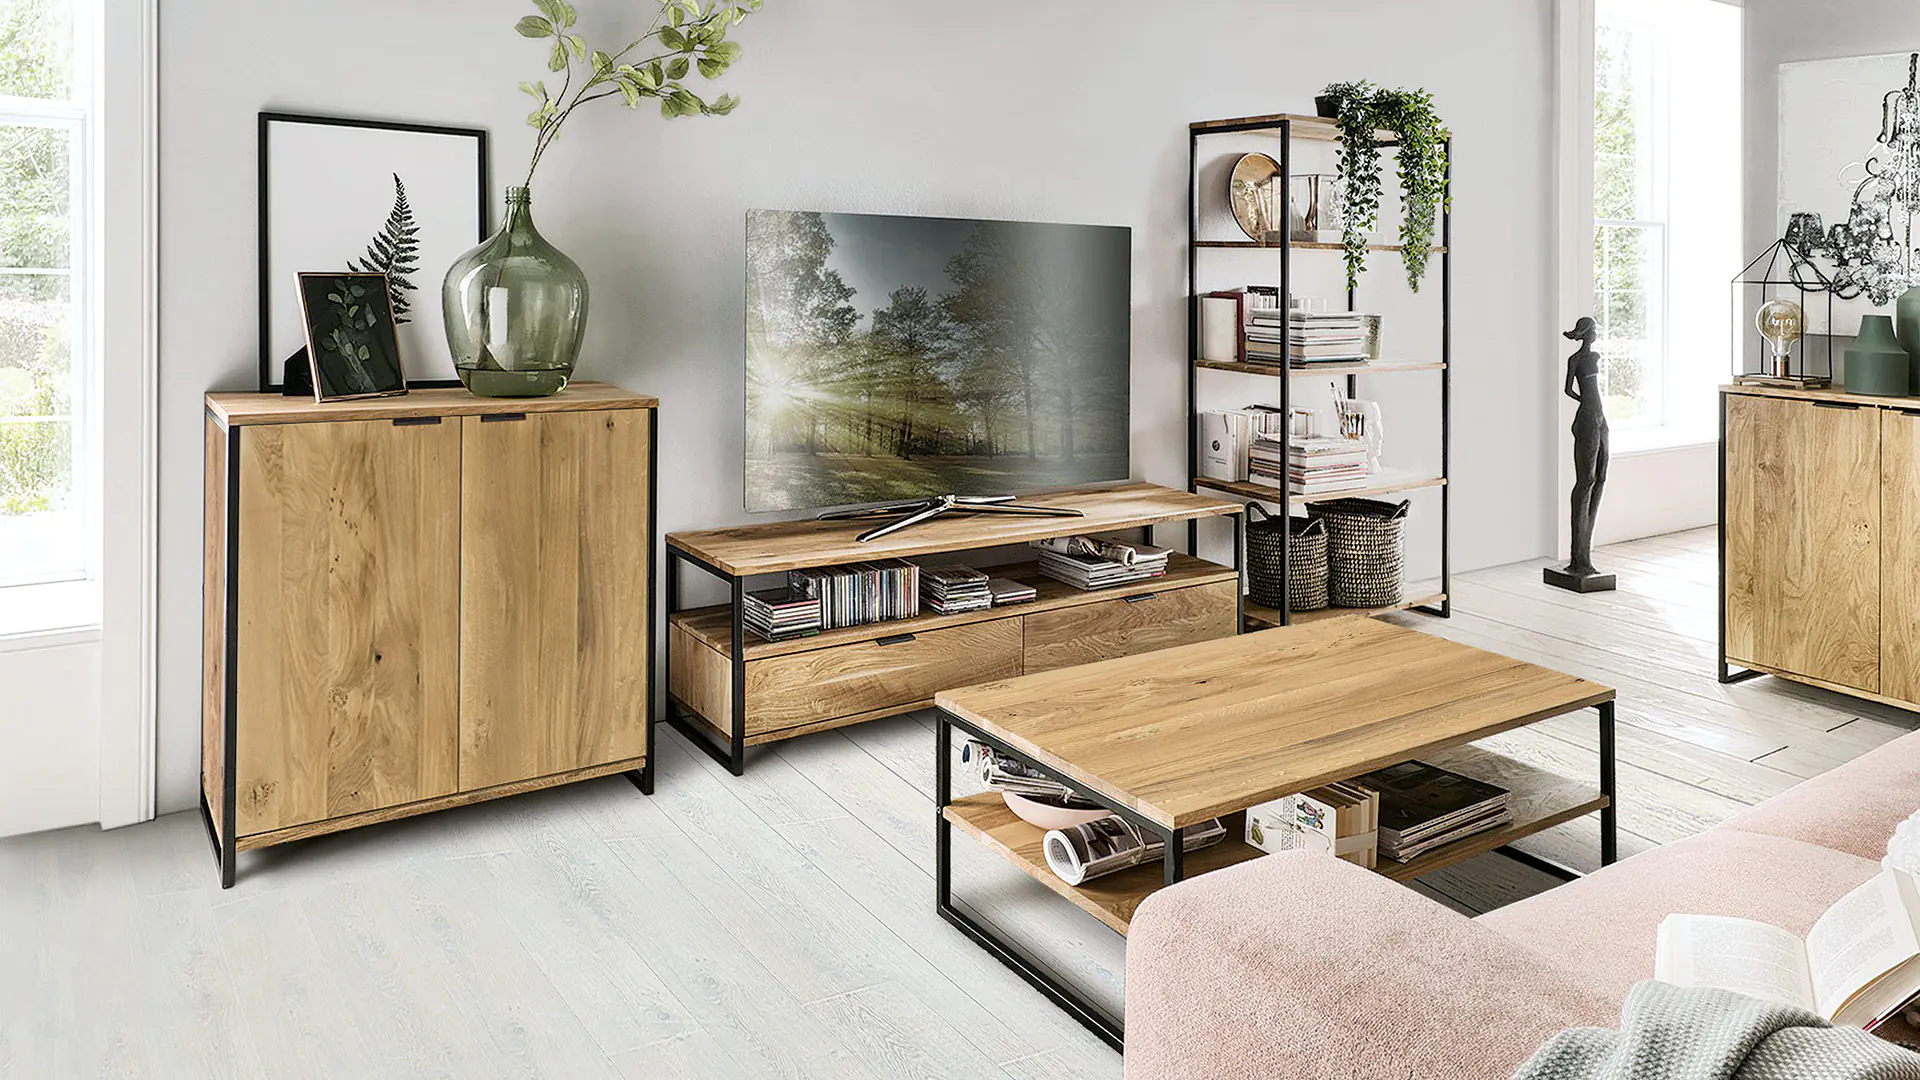 Le sideboard Anca complète parfaitement votre salon moderne de style industriel